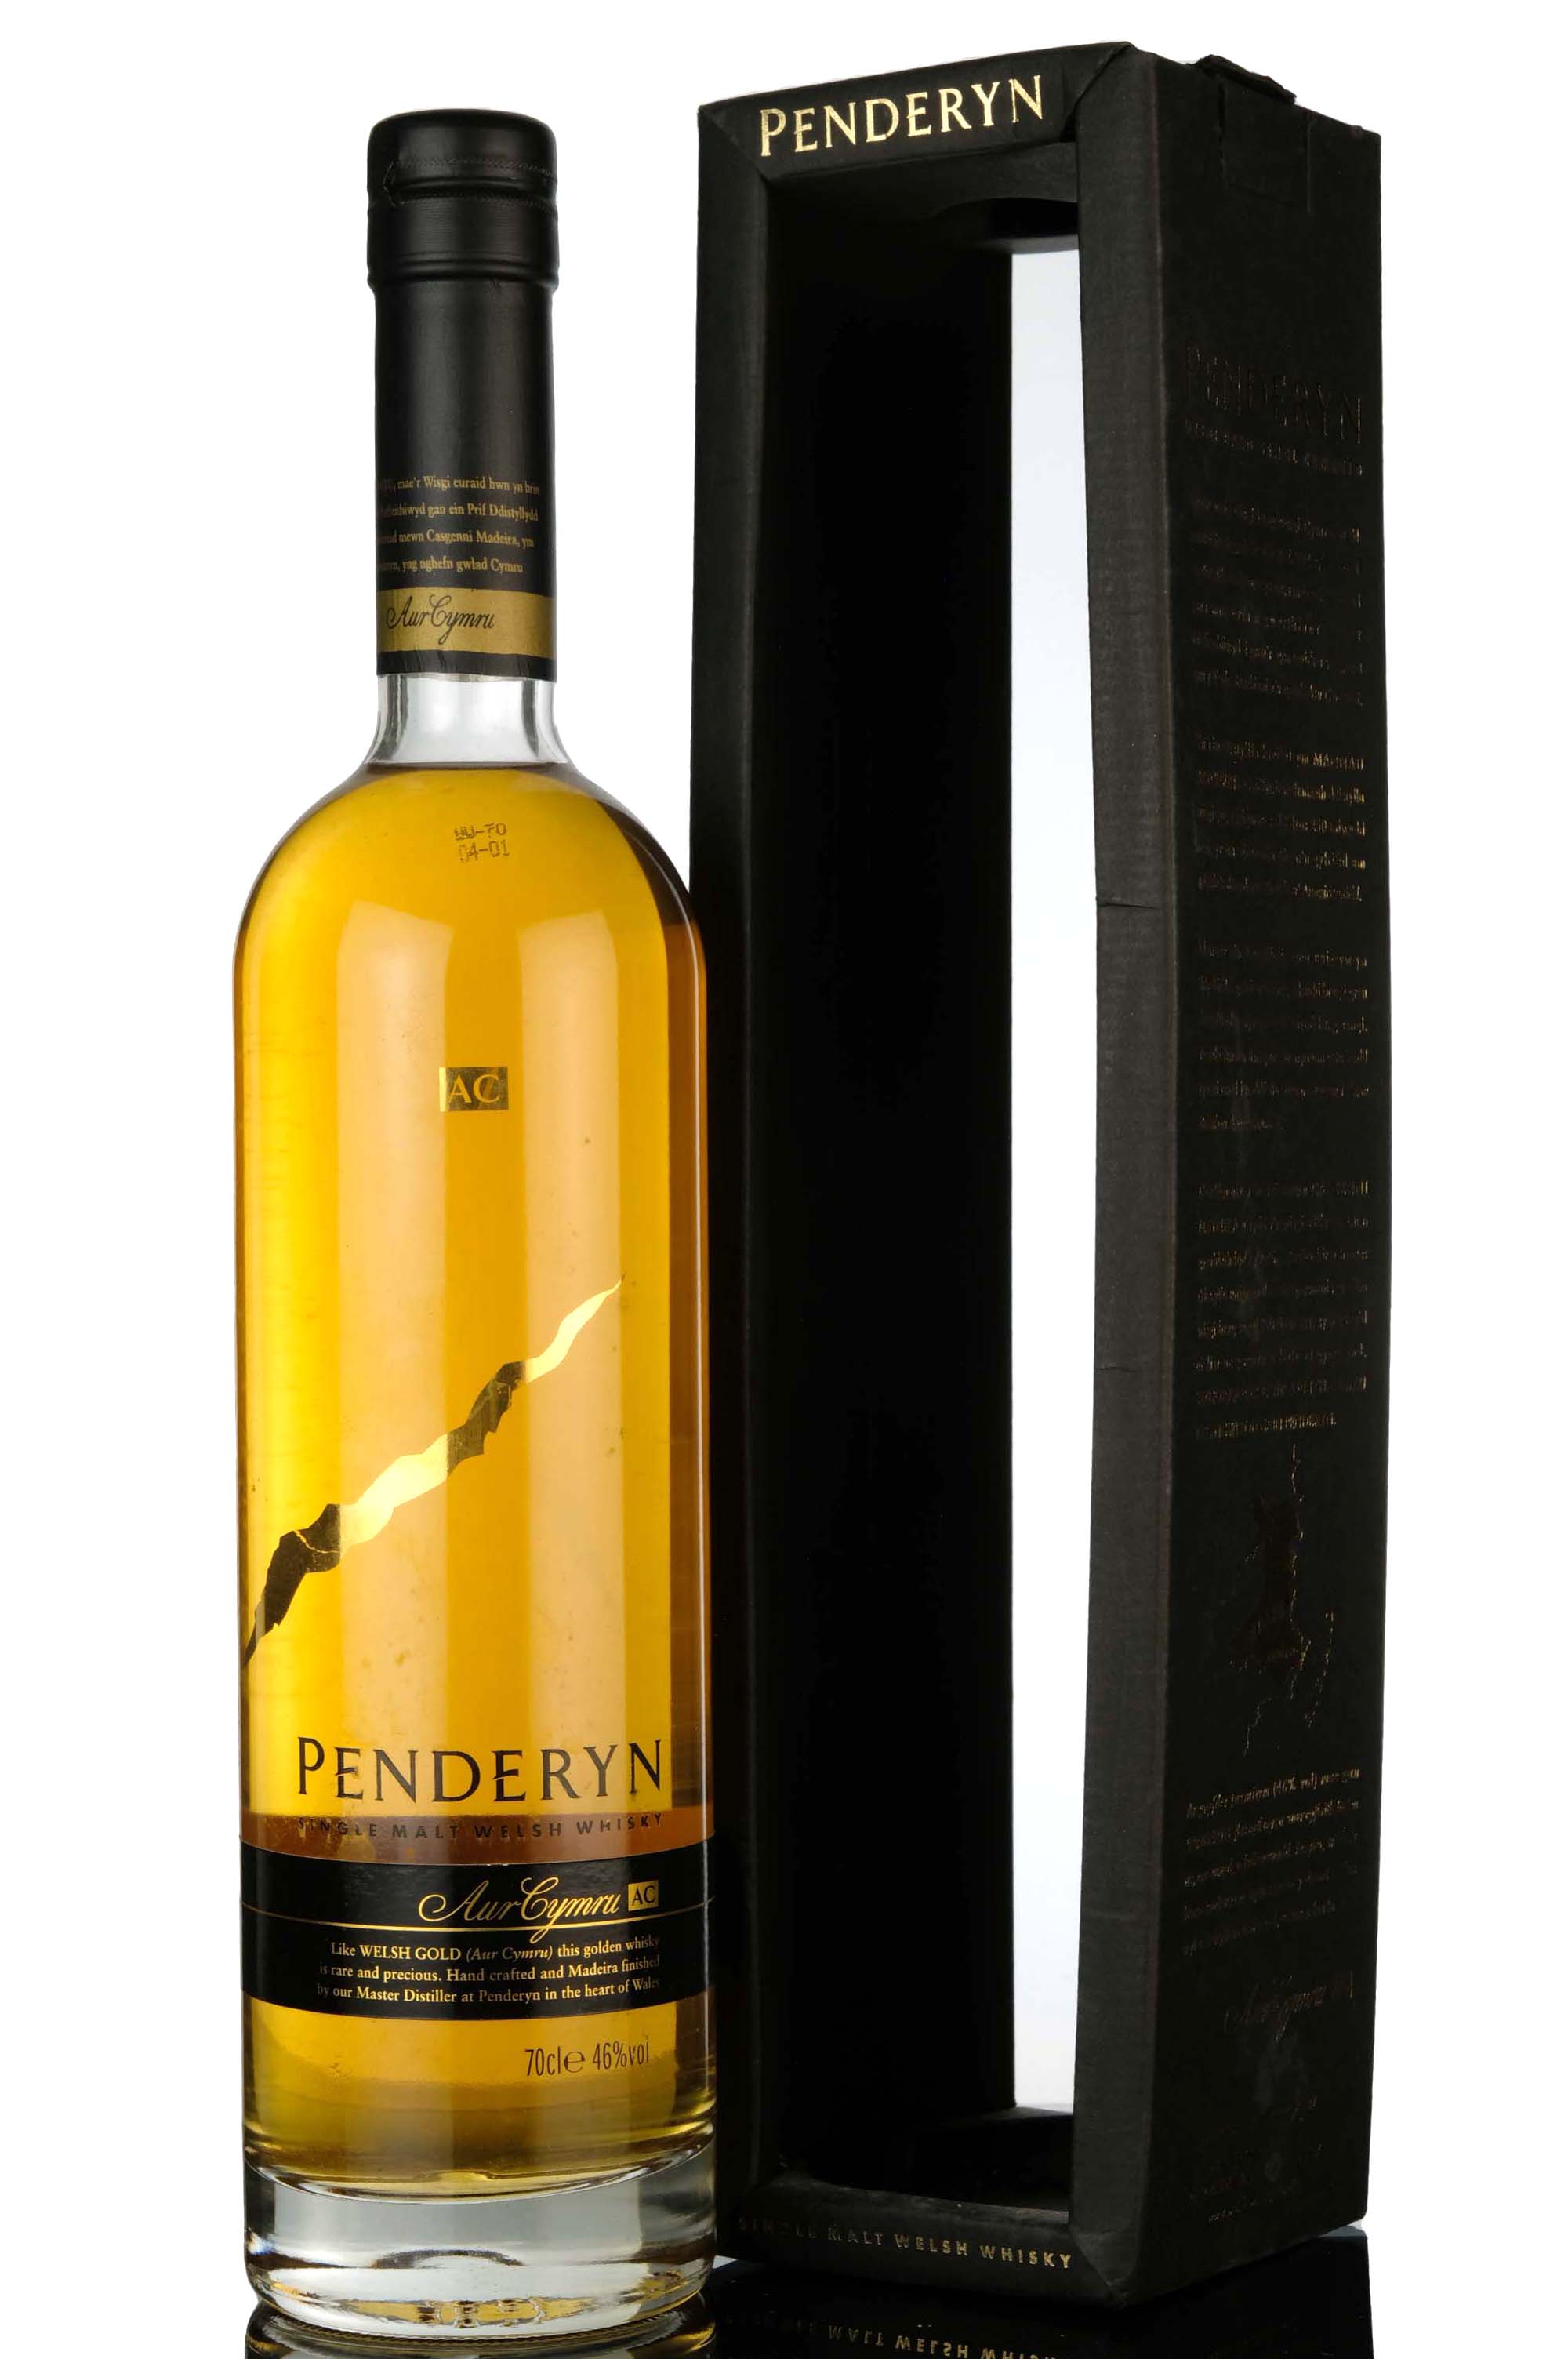 Penderyn Limited Release - Casks 5-99